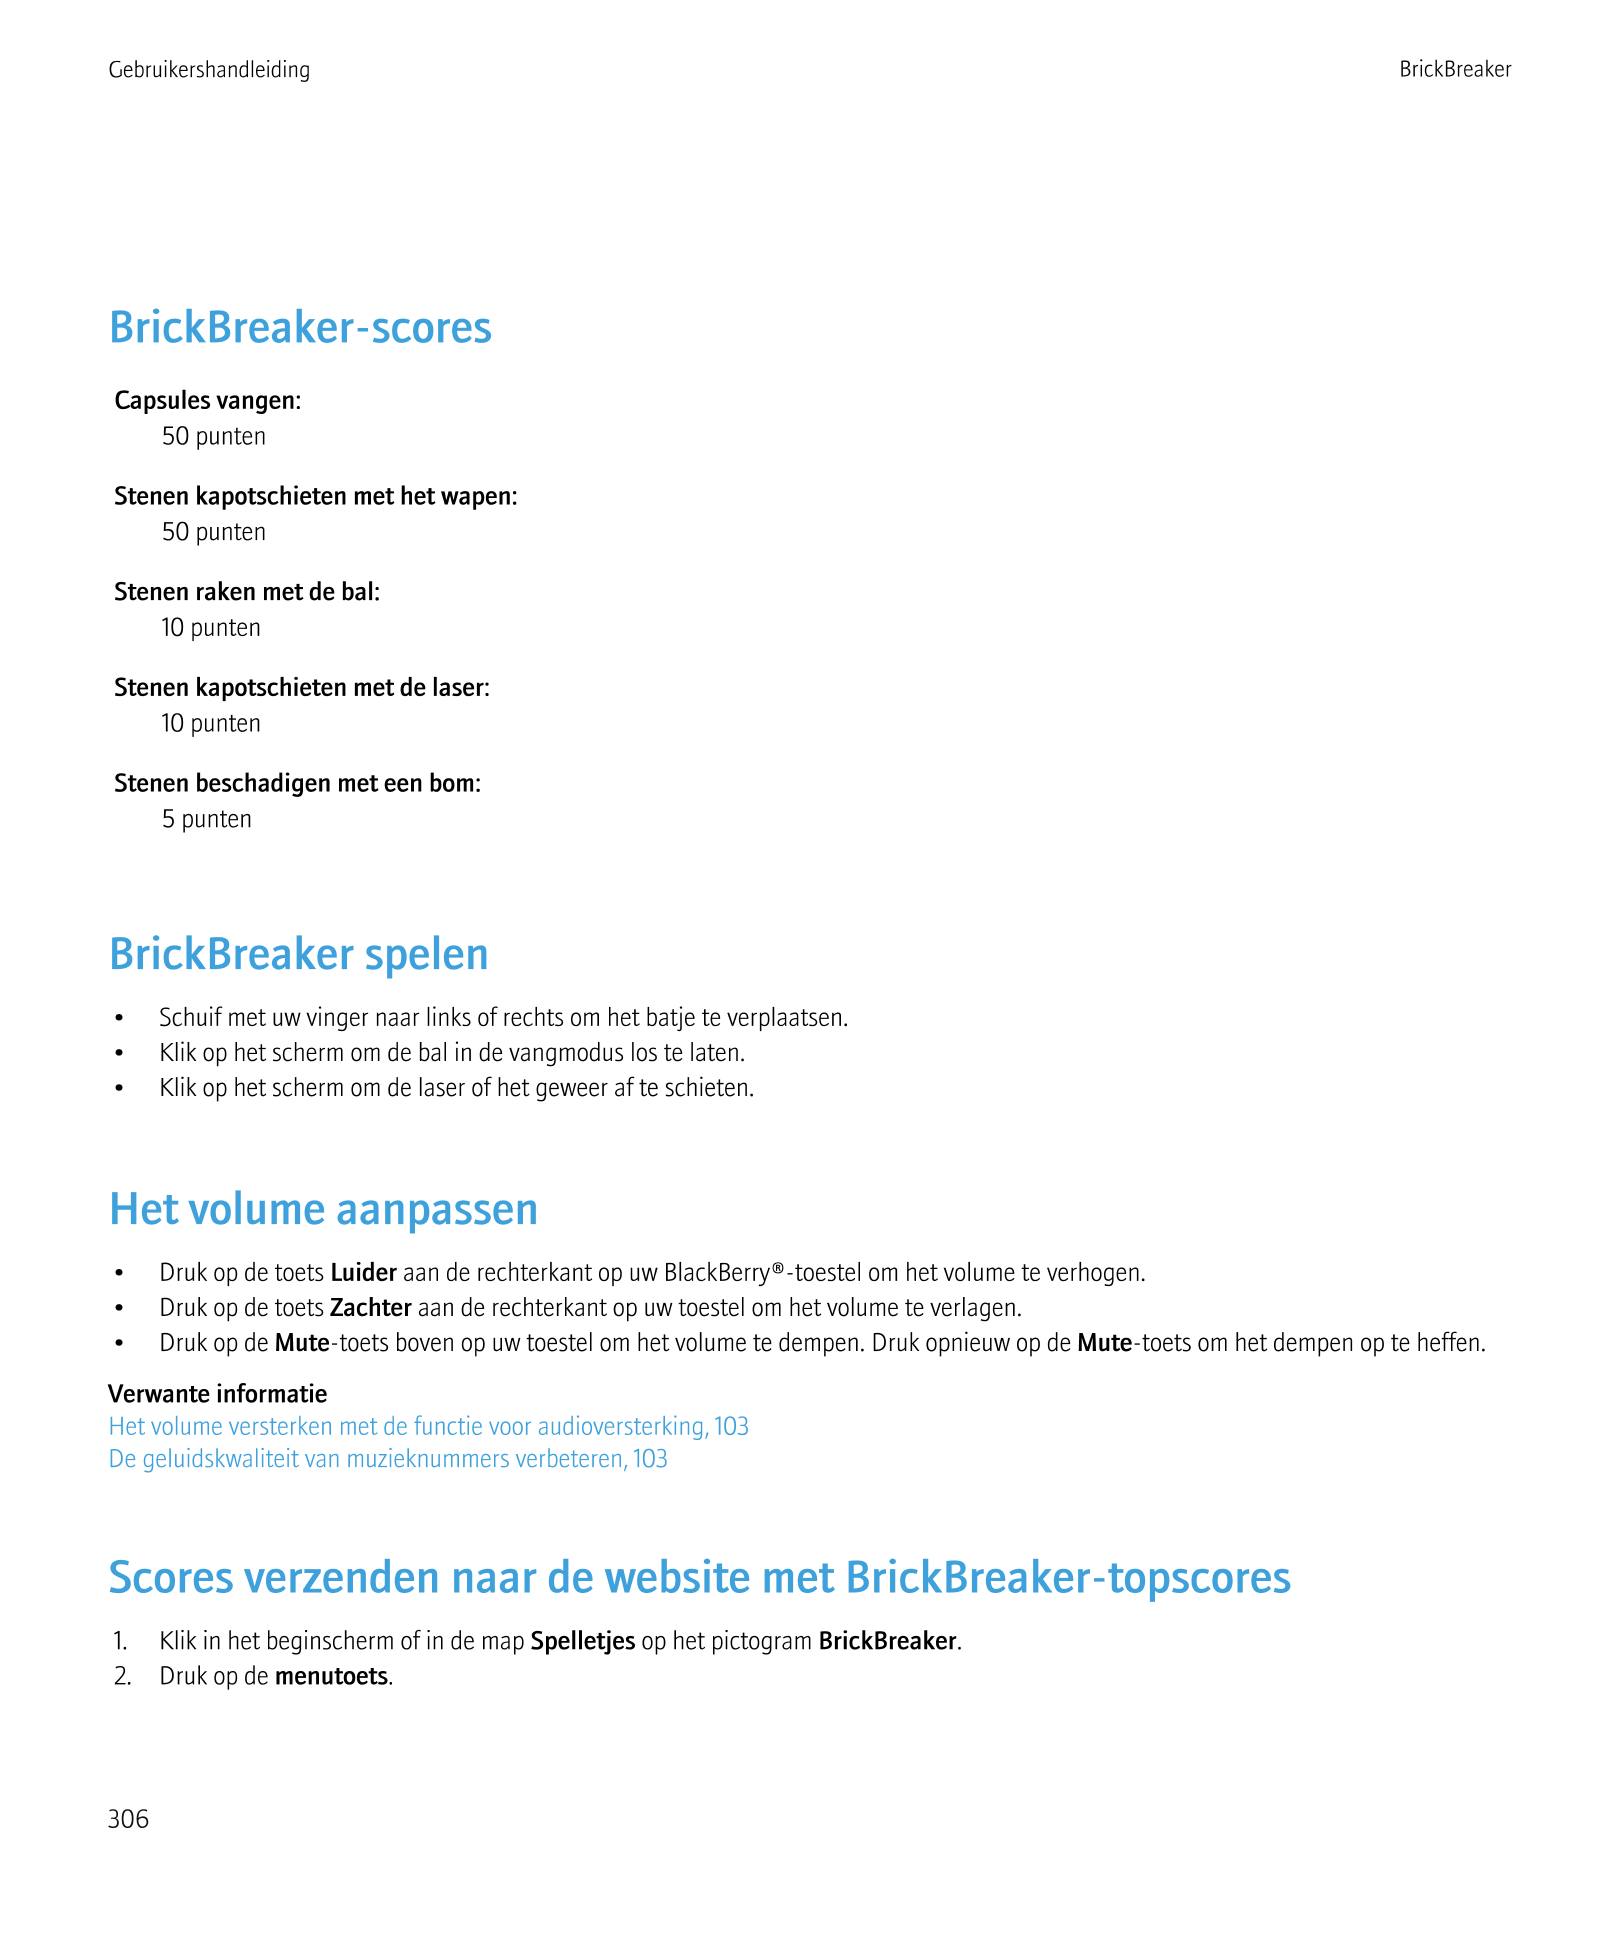 Gebruikershandleiding BrickBreaker
BrickBreaker-scores
Capsules vangen:
50 punten
Stenen kapotschieten met het wapen:
50 punten
